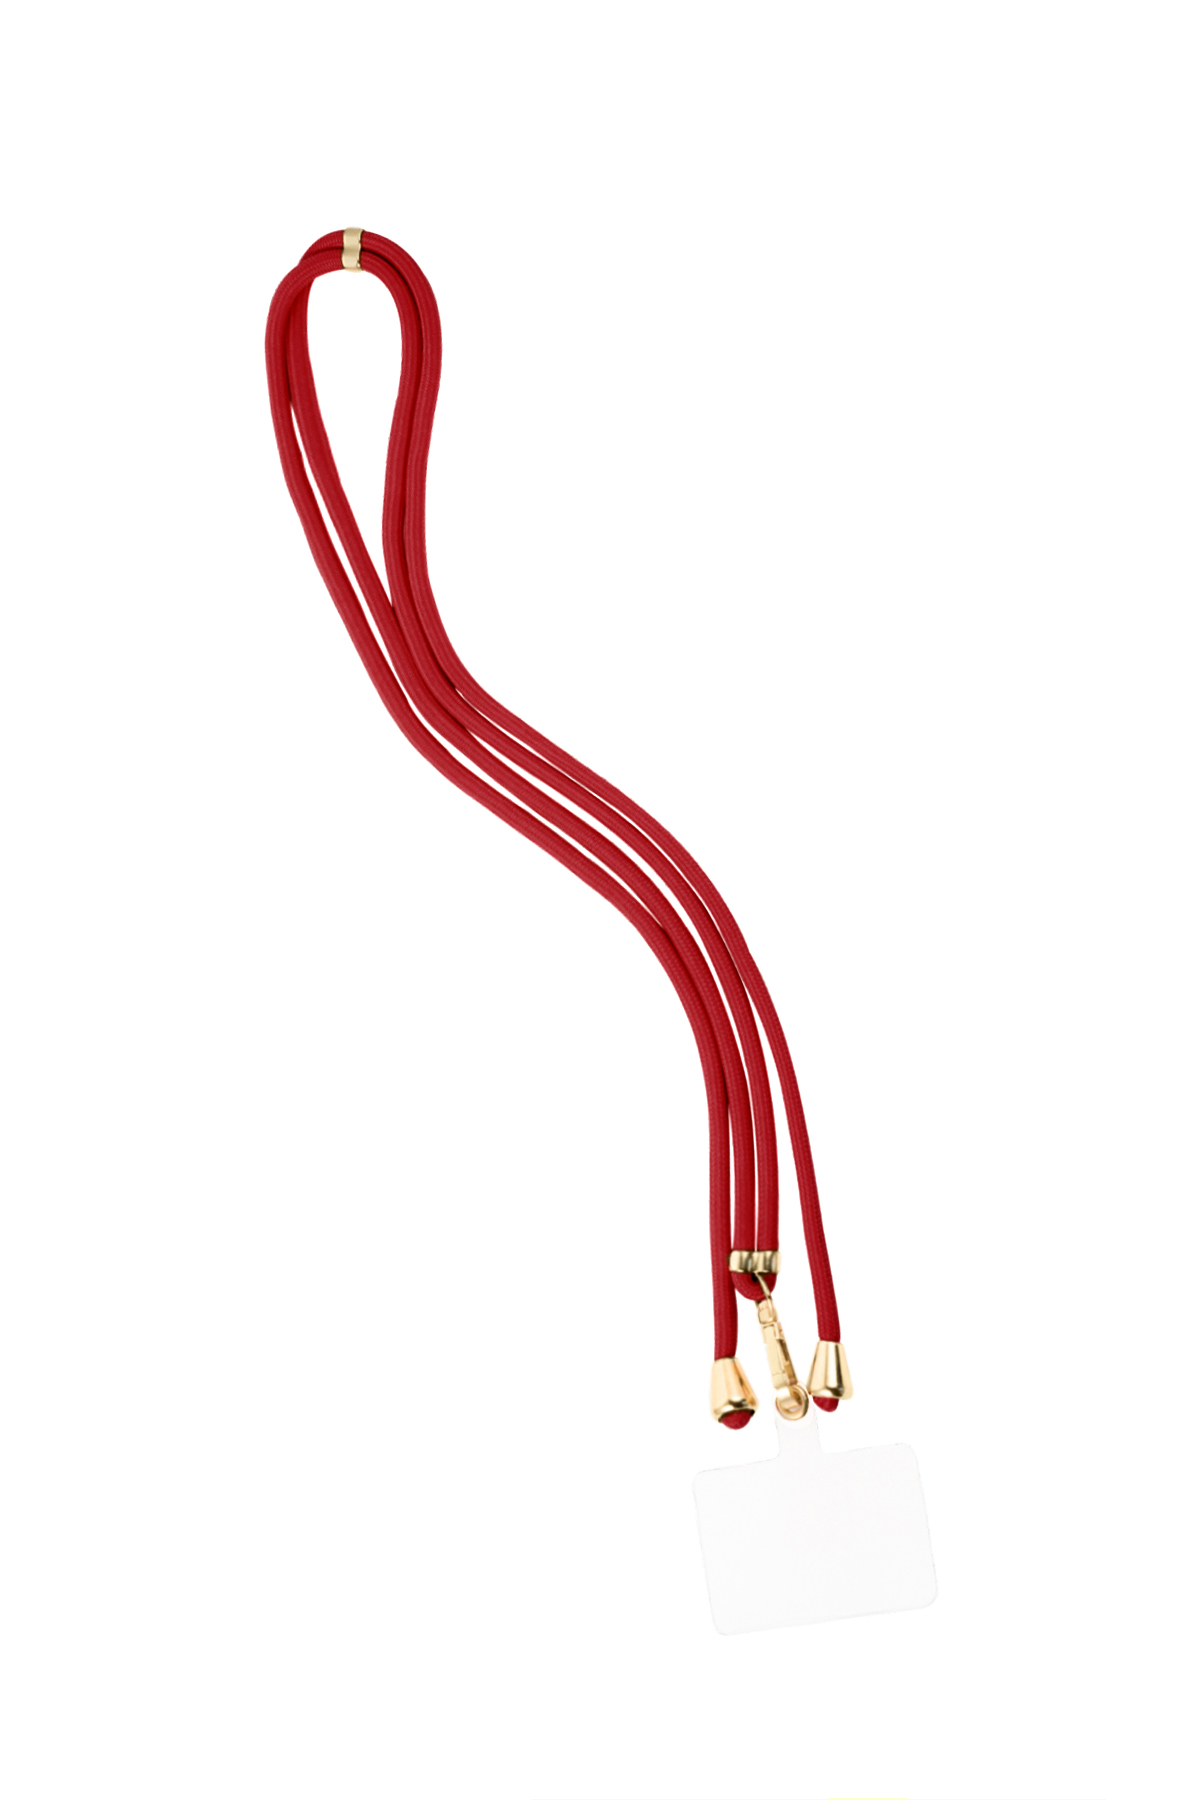 Cable telefónico con estampado sutil - rojo vino h5 